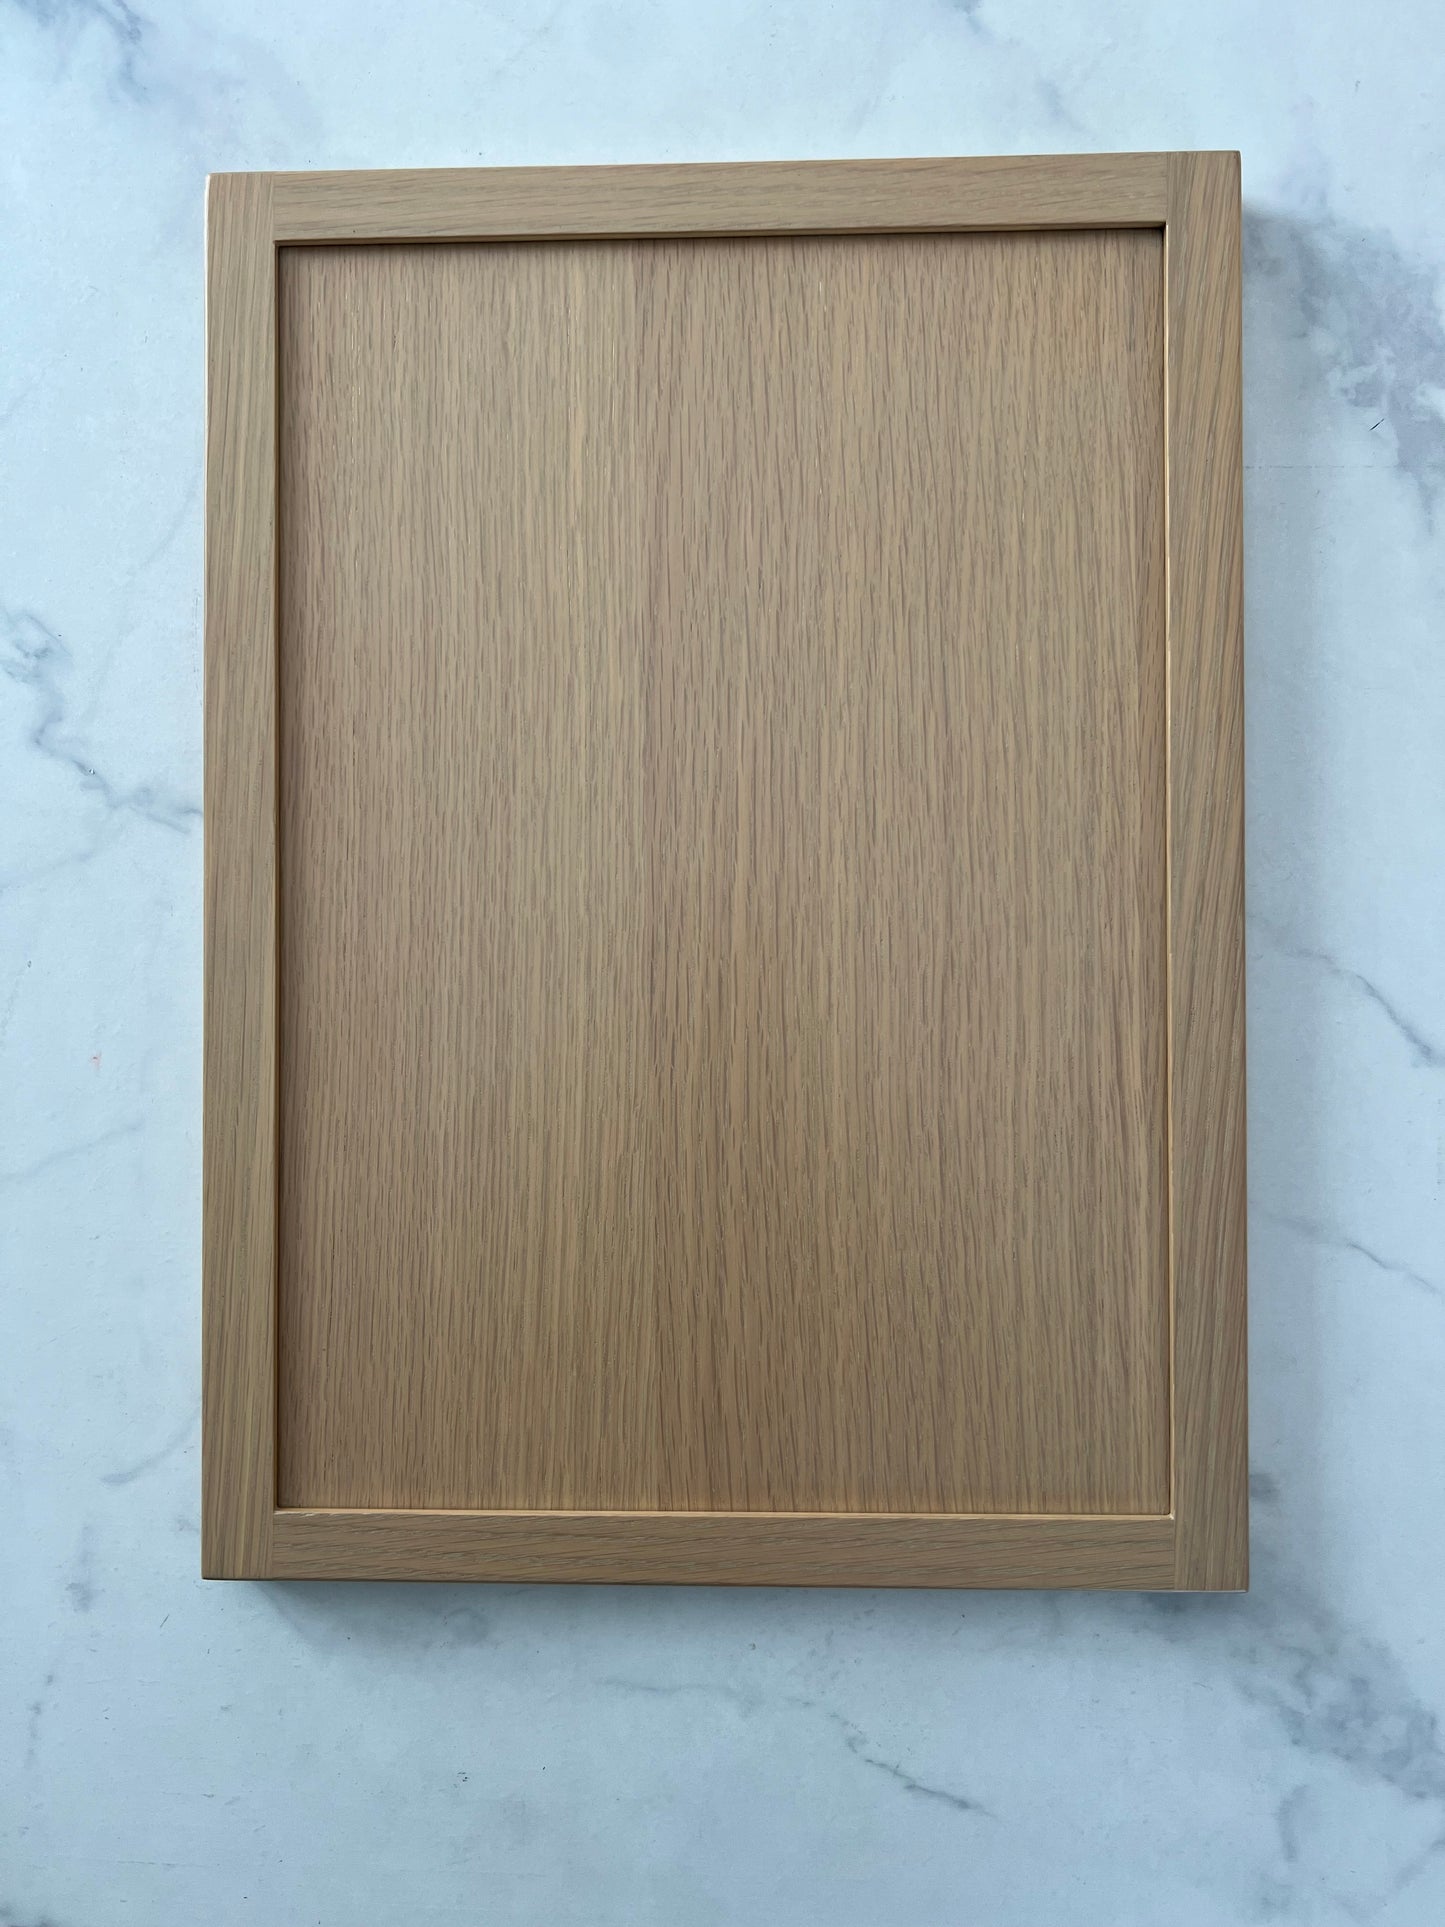 Slim Frame Shaker Base Decorative End Panel for Base Cabinets